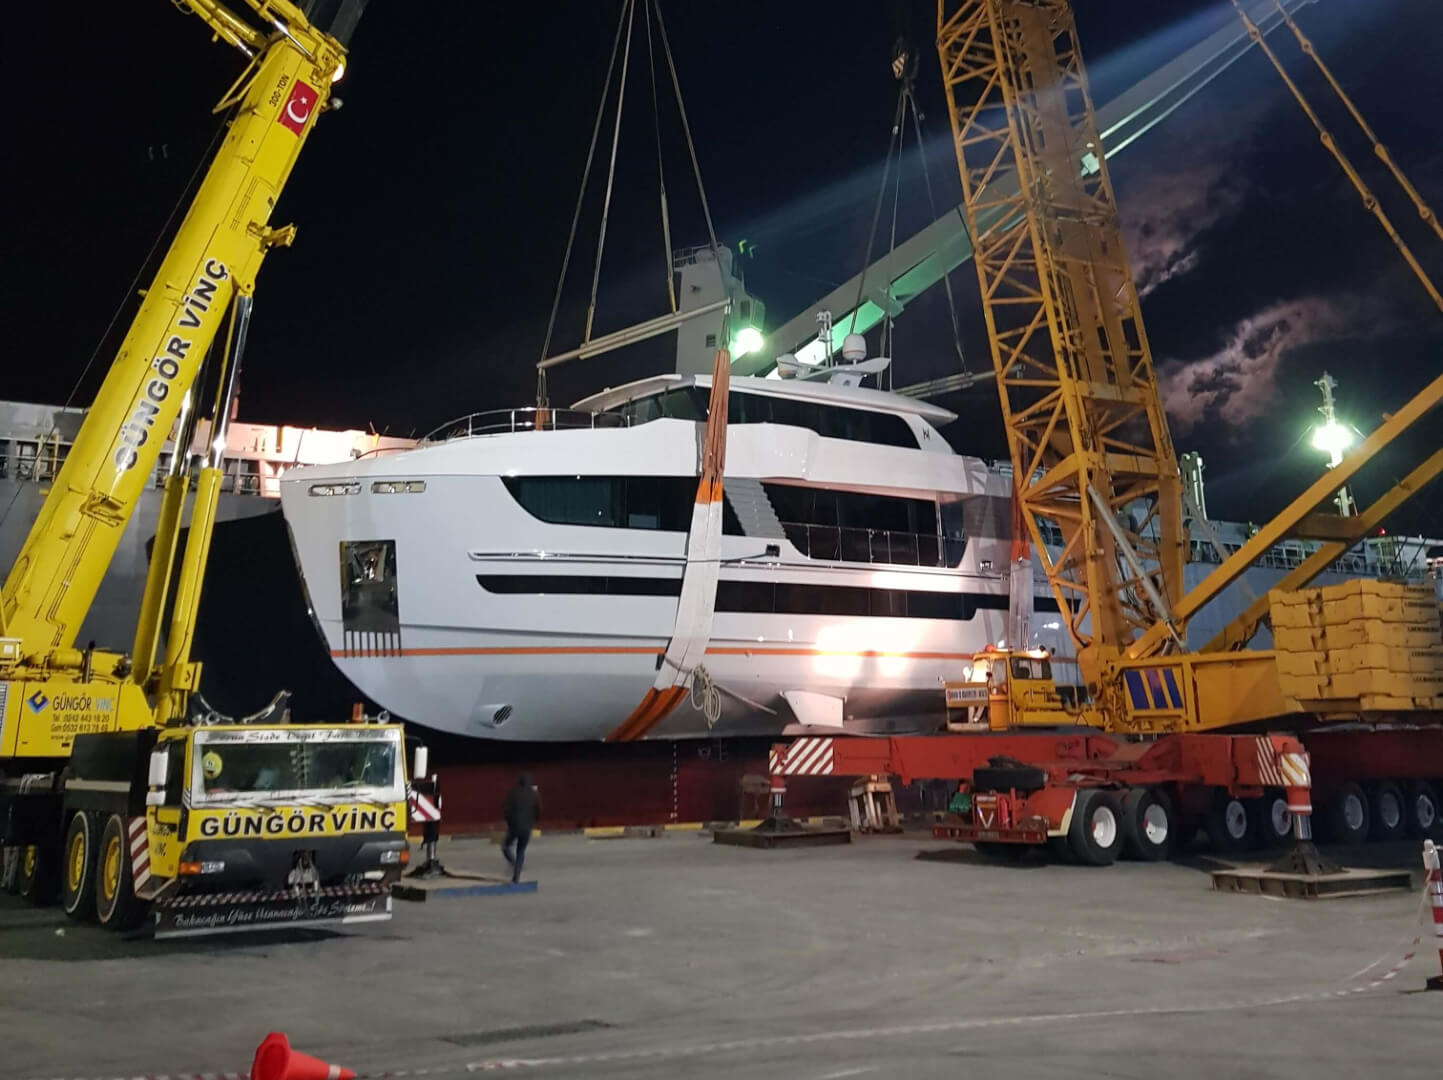 115-ton-yacht-in-antalya-free-zone | Blog